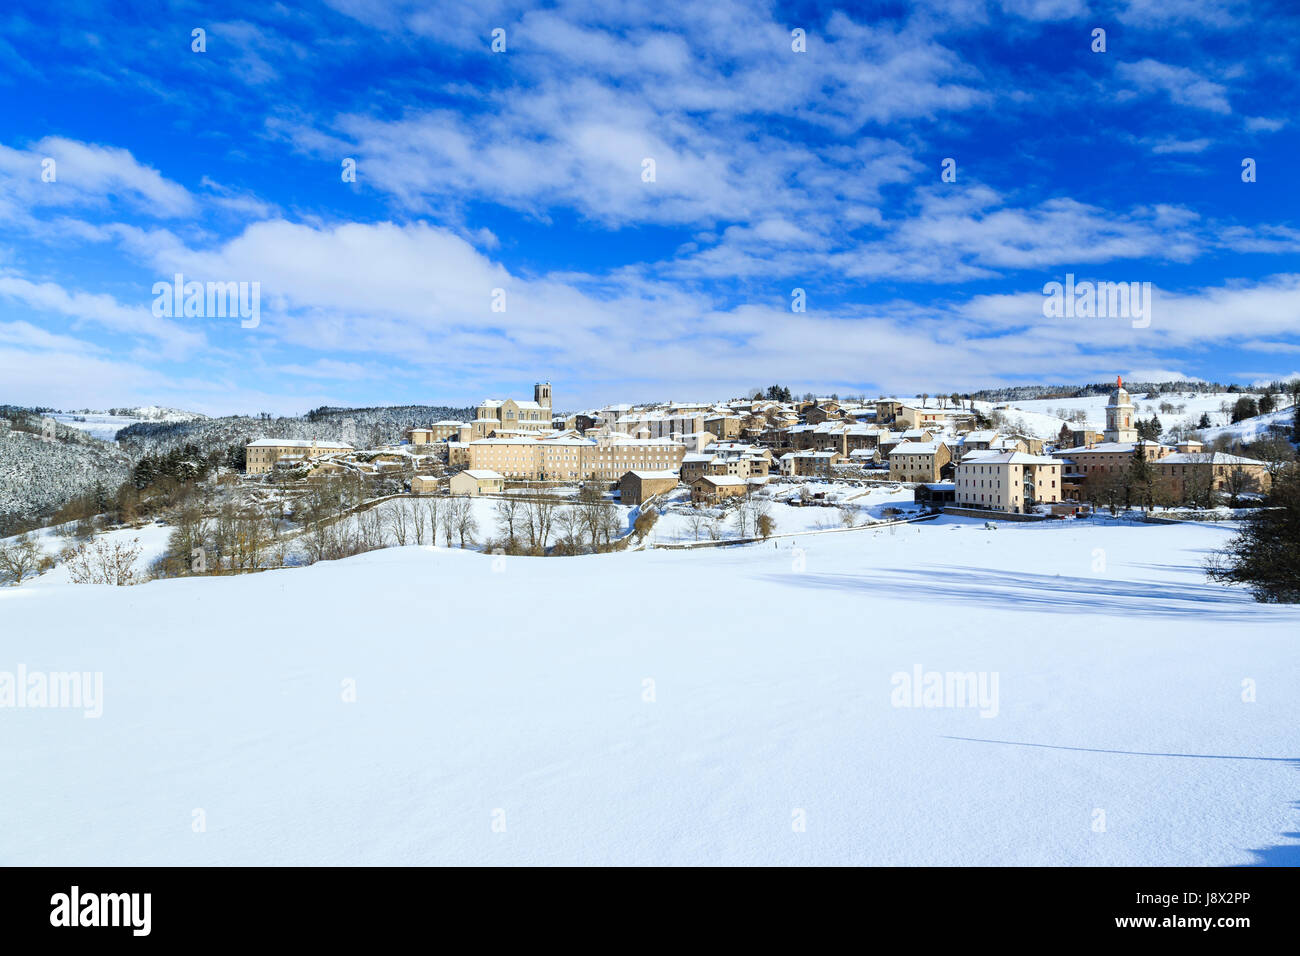 France, Haute-Loire, Pradelles, labelled Les Plus Beaux Villages de France (The Most beautiful Villages of France), the village under snow Stock Photo